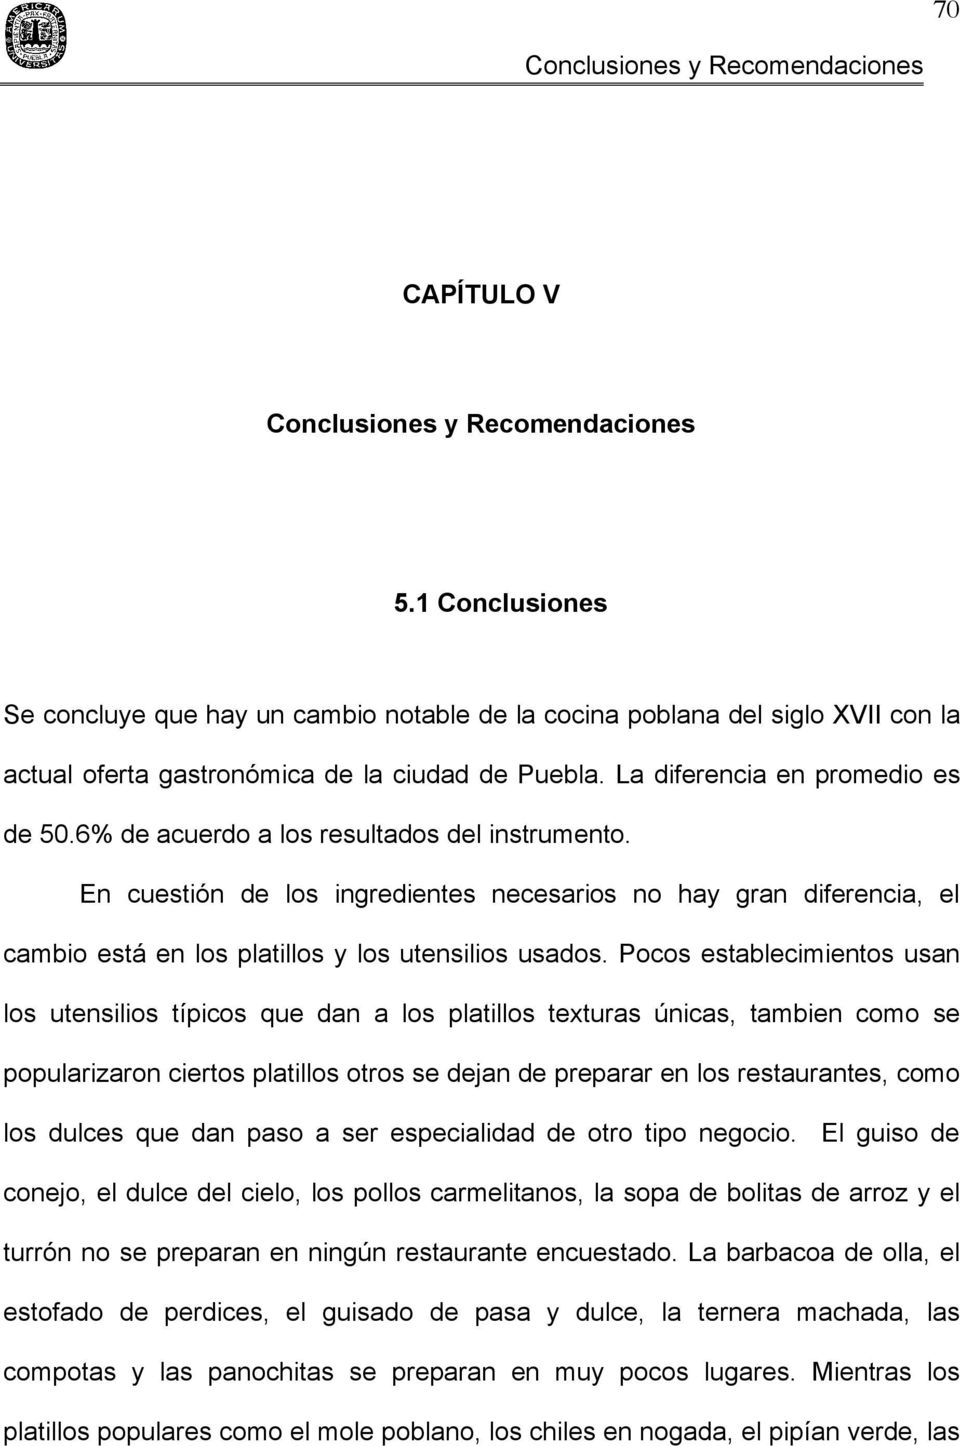 CAPÍTULO V. Conclusiones y Recomendaciones.  Conclusiones. Se concluye  que hay un cambio notable de la cocina poblana del siglo XVII con la - PDF  Free Download